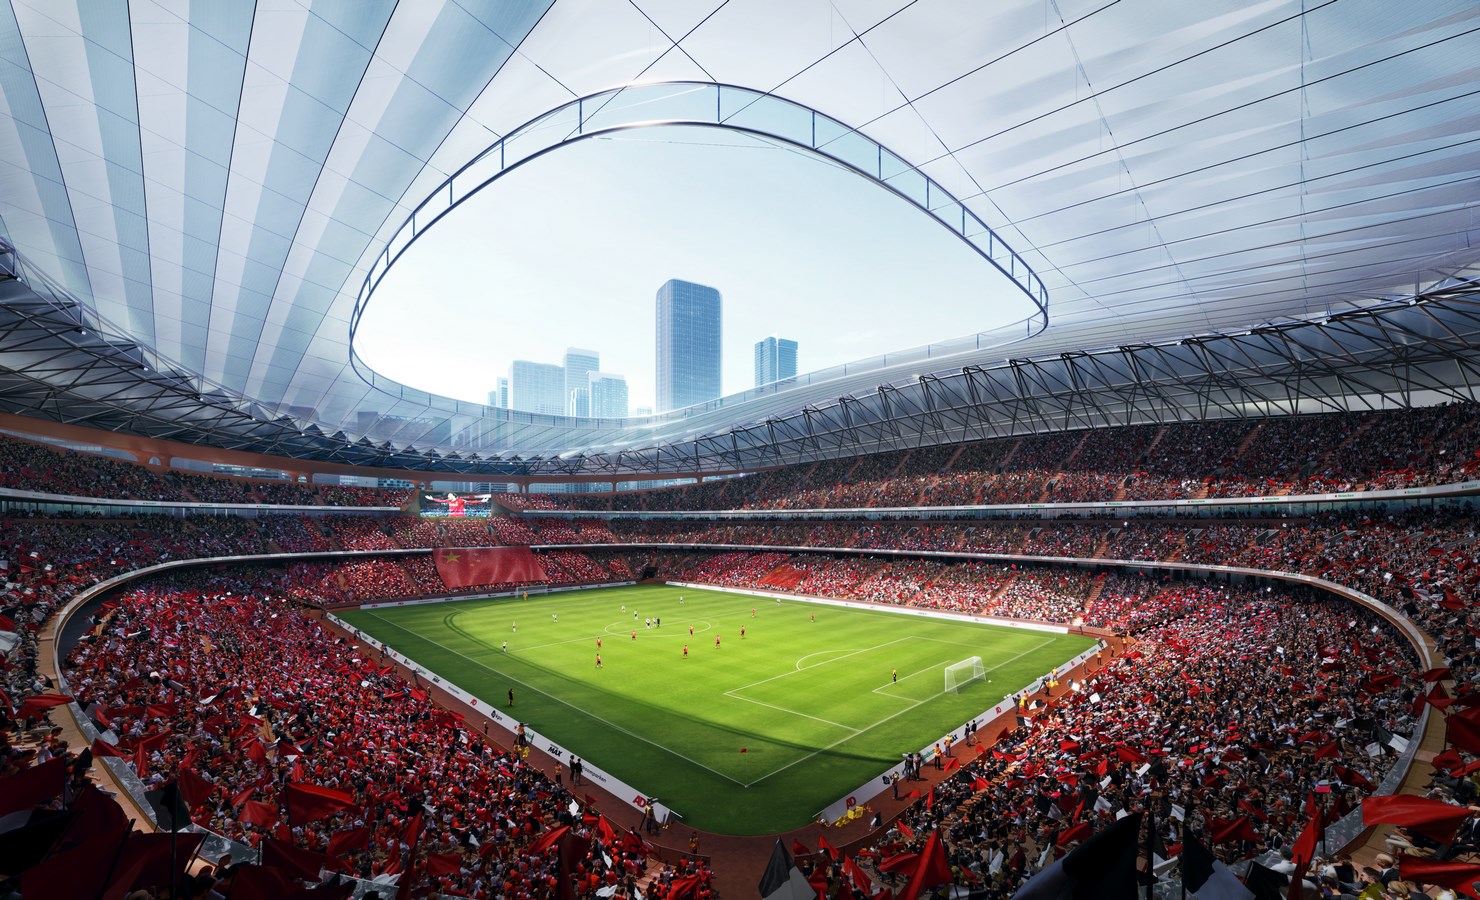 Xi’an International Football Centre By Zaha Hadid Architects - Sheet2